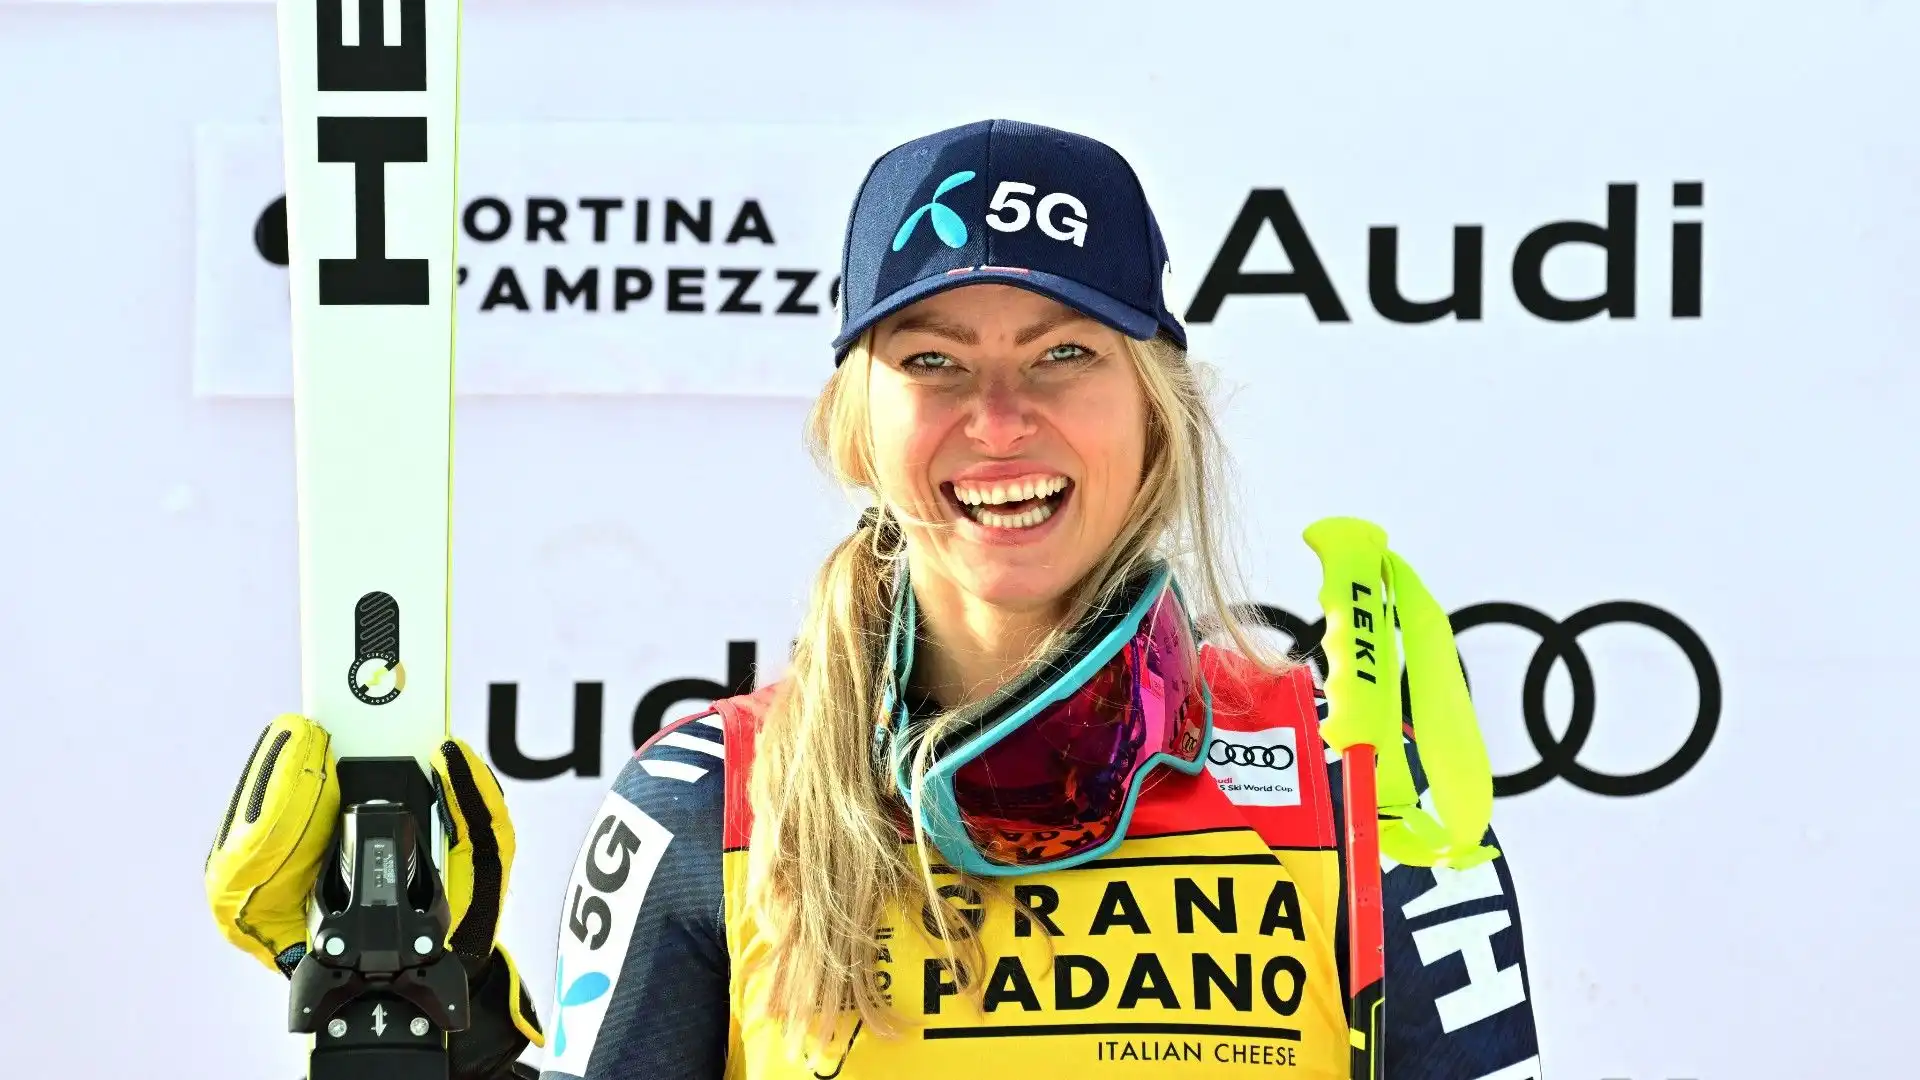 La sciatrice, con un bellissimo sorriso in volto, ha esultato per la vittoria